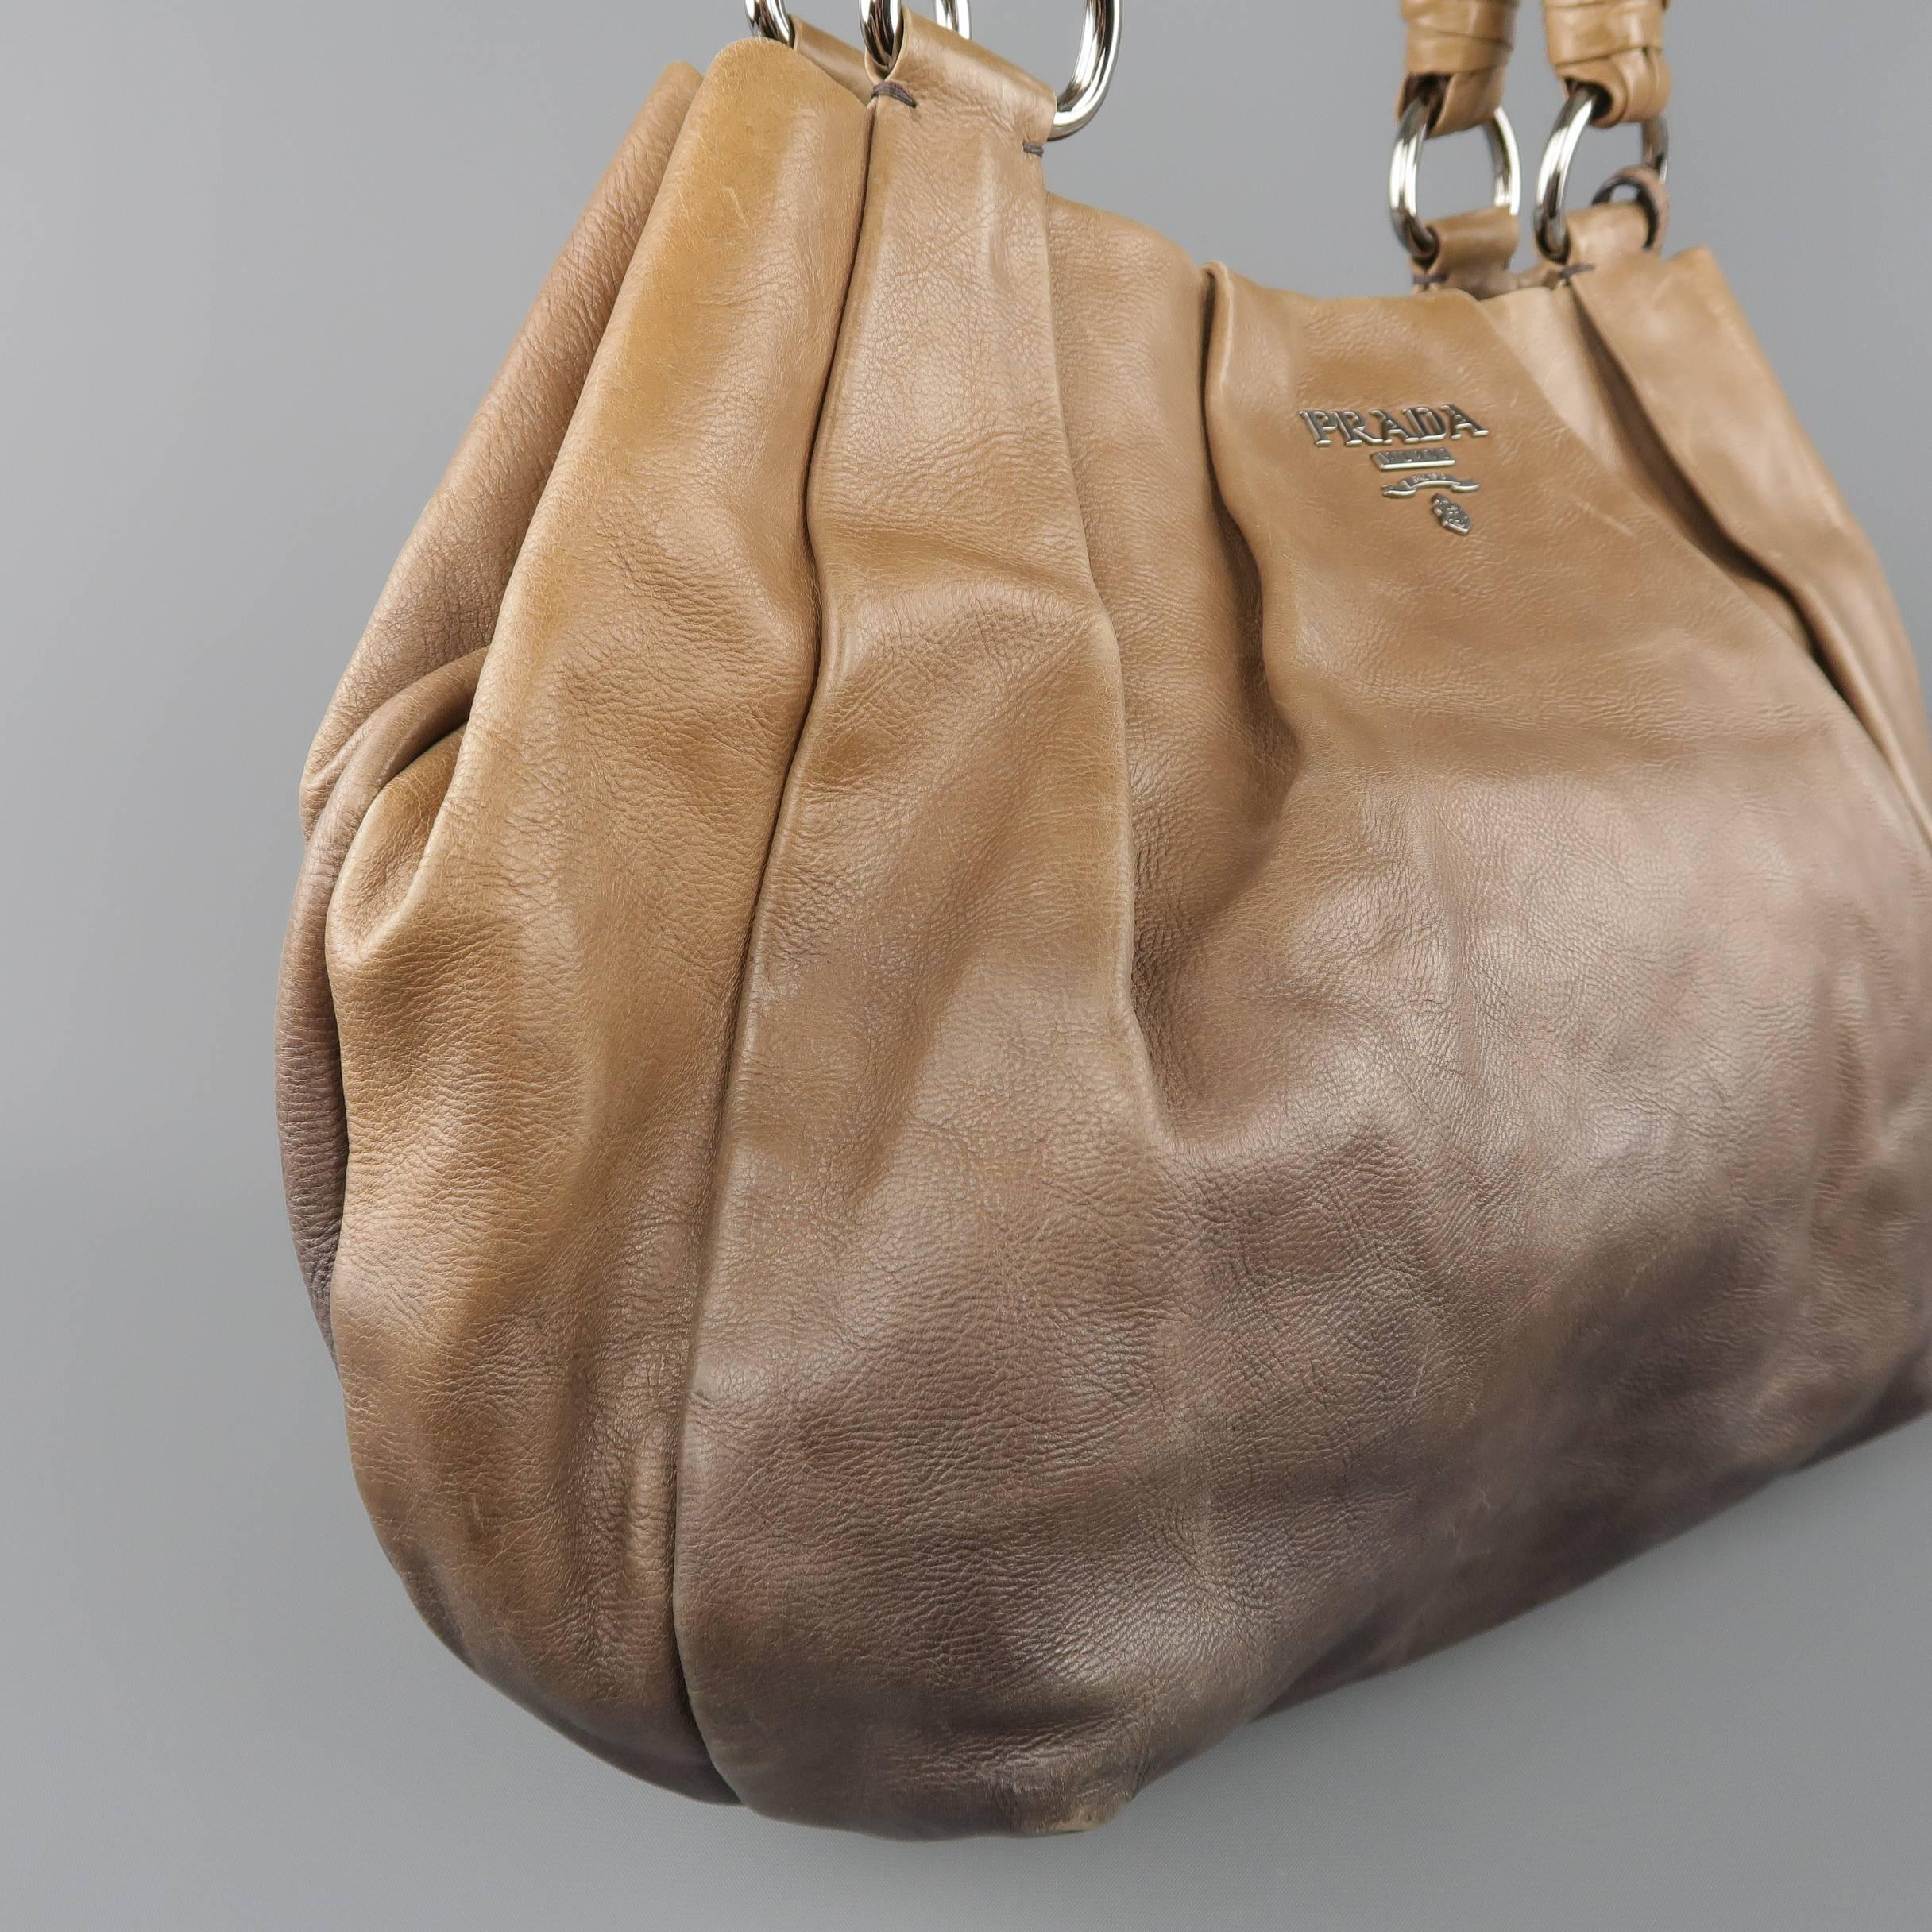 PRADA Taupe Ombre Leather Degrade Blond Mordor Glace Handbag 7